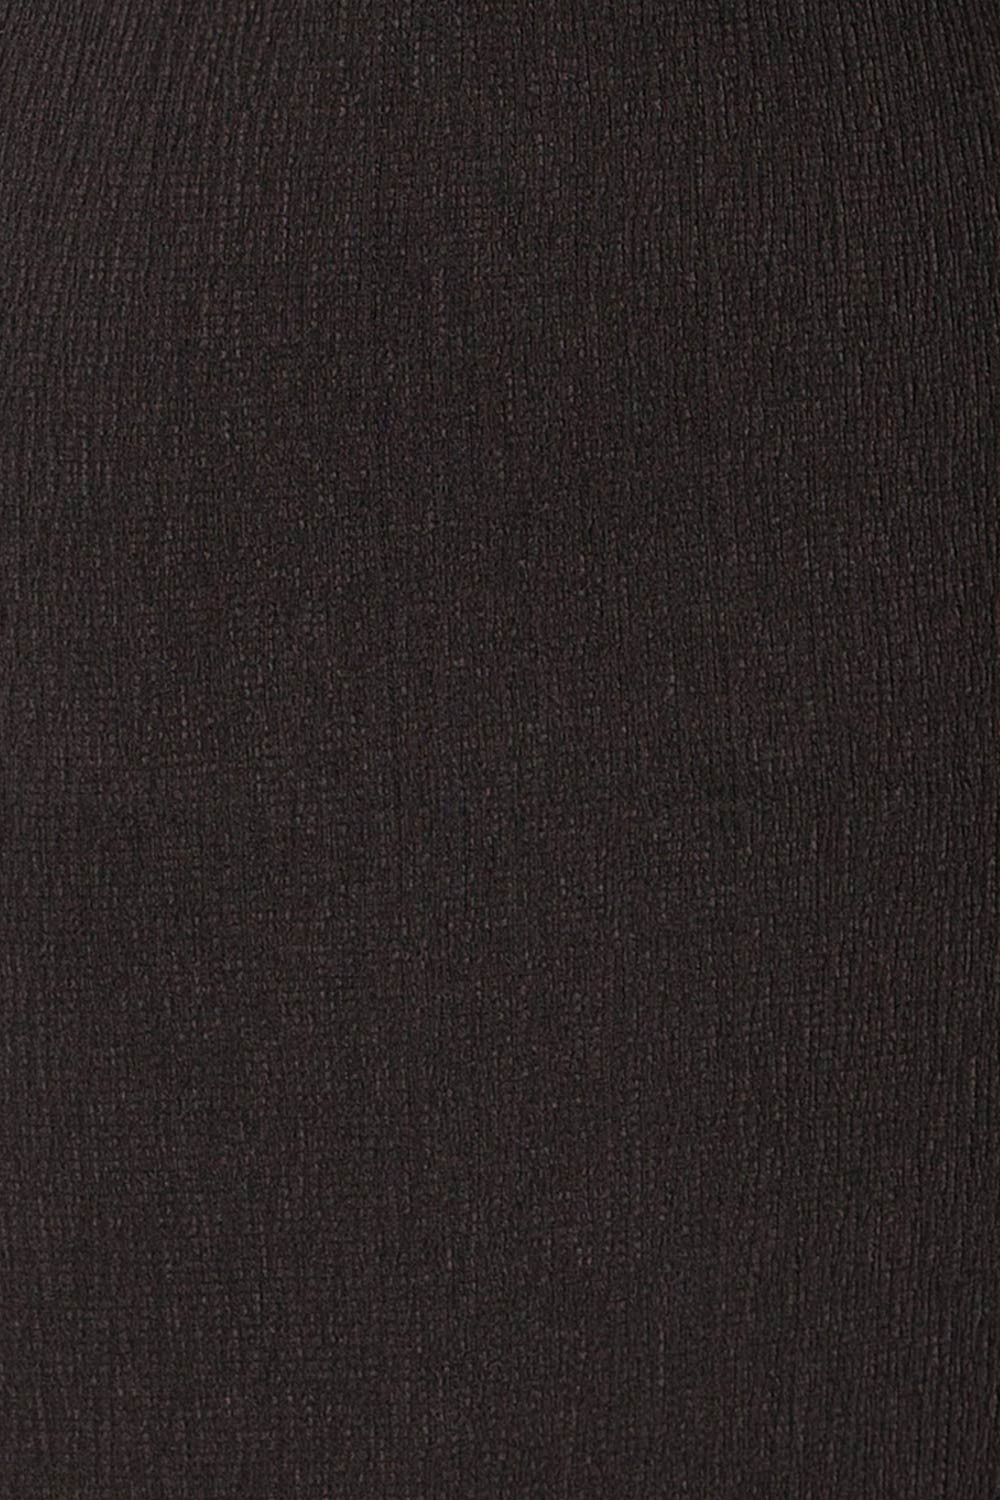 Asher Black Textured Mini Skirt | La petite garçonne  fabric 